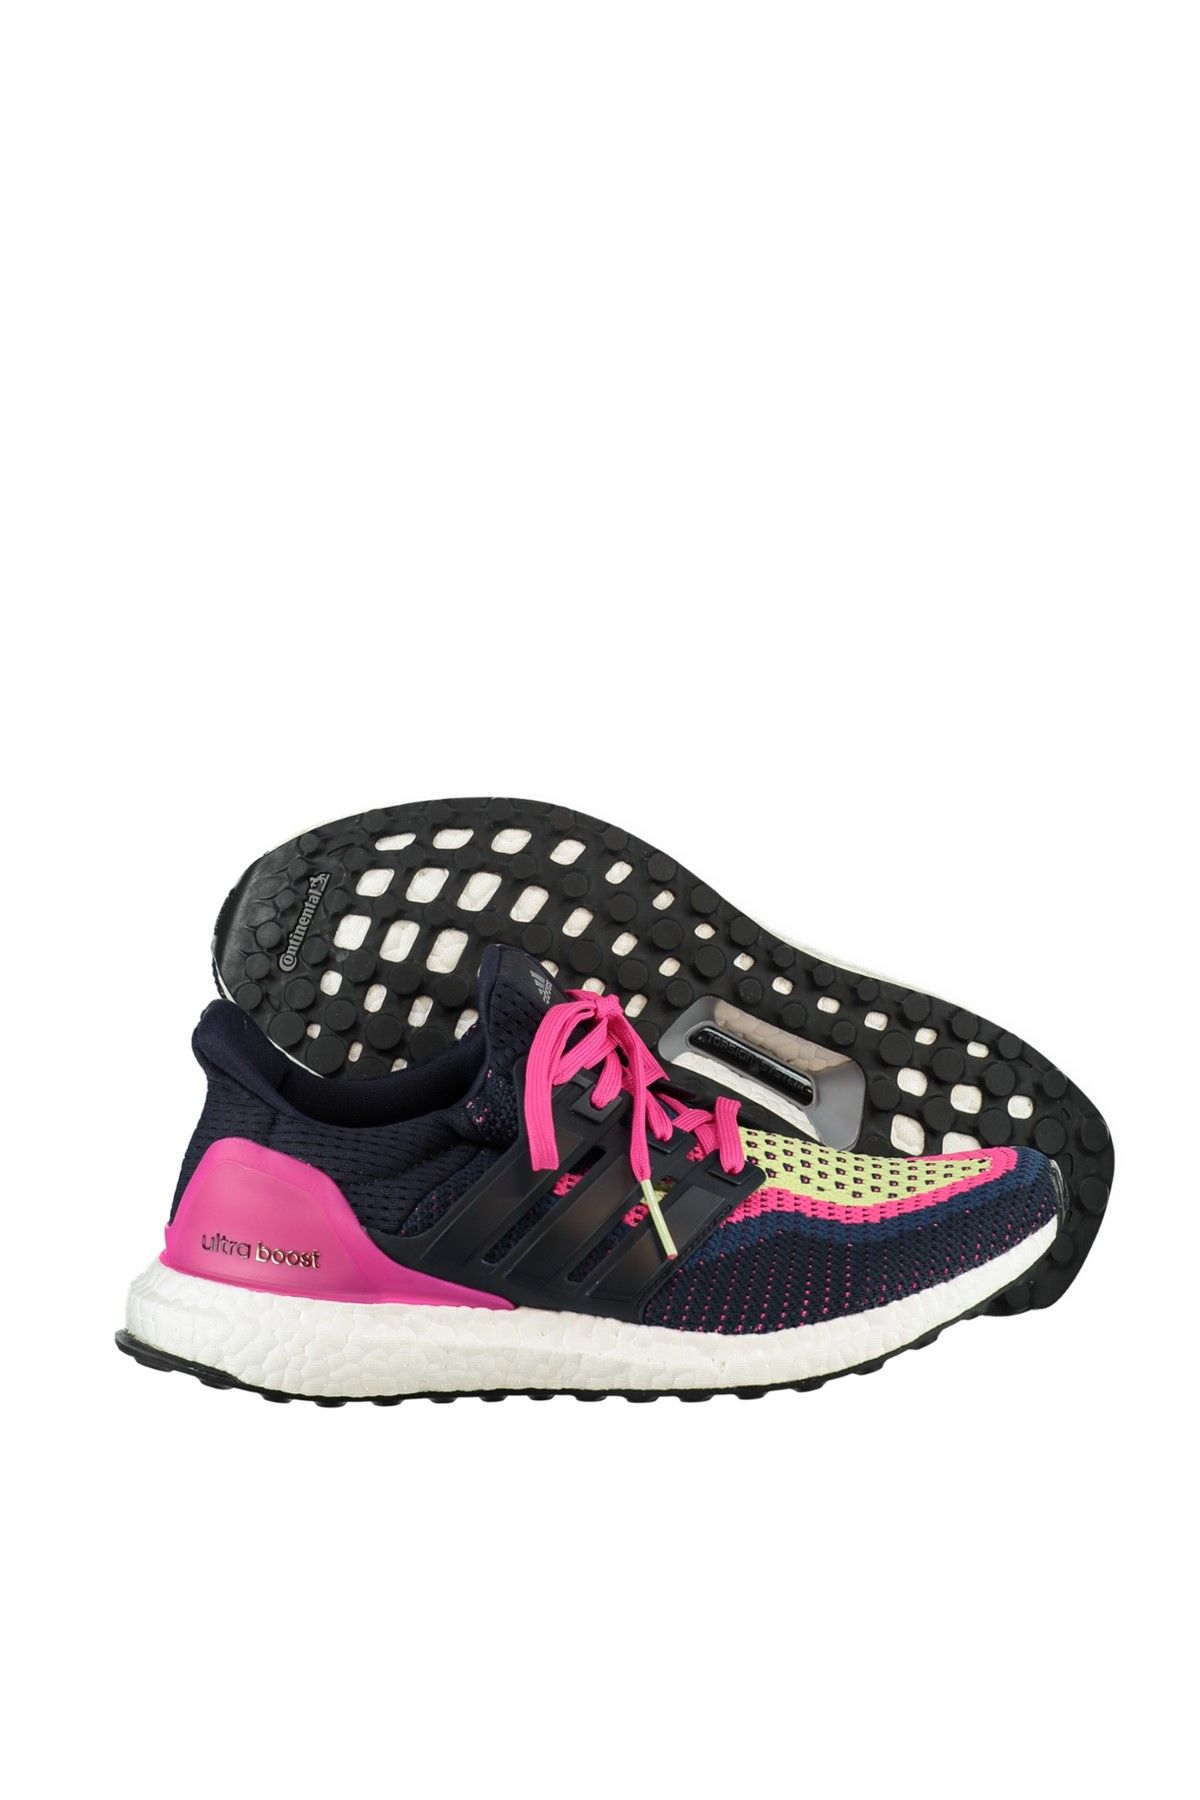 adidas Kadın Koşu & Antrenman Ayakkabısı - Ultra Boost W Siyah Kadın Koşu Ayakkabısı - AF5143